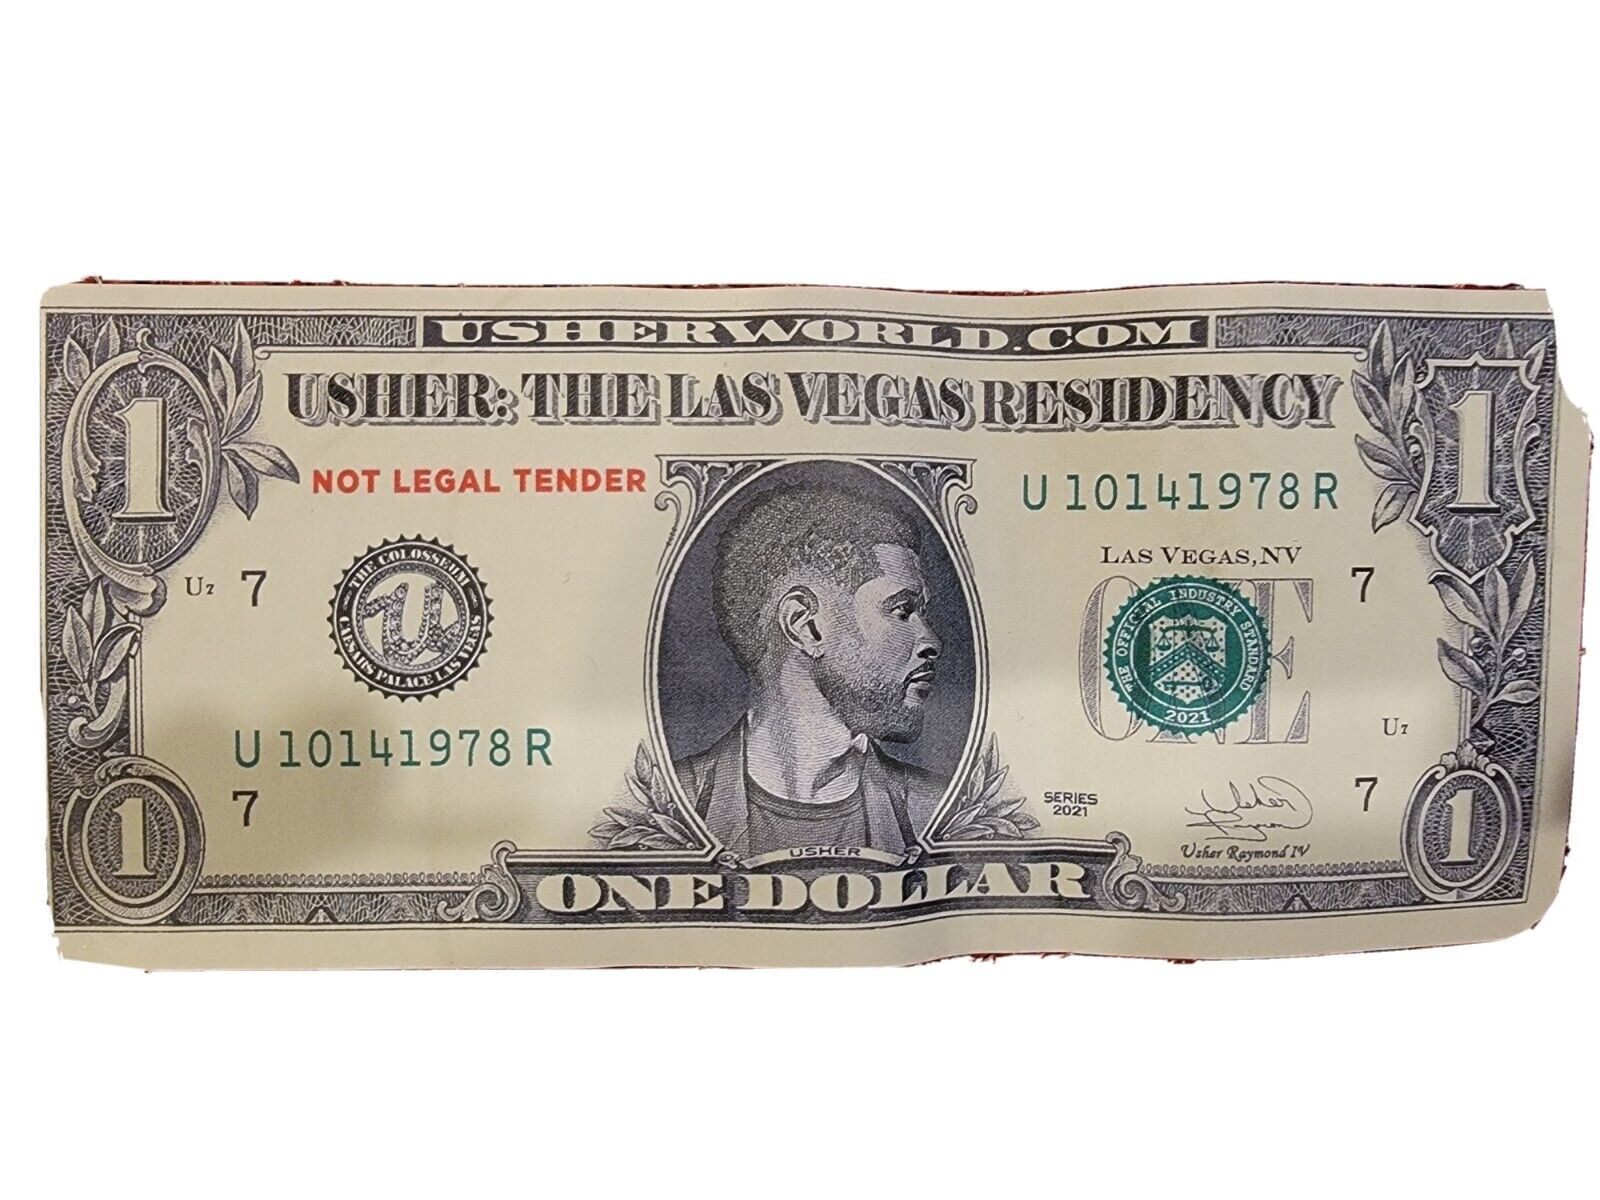 Usher Bucks from the last show of the Vegas residency